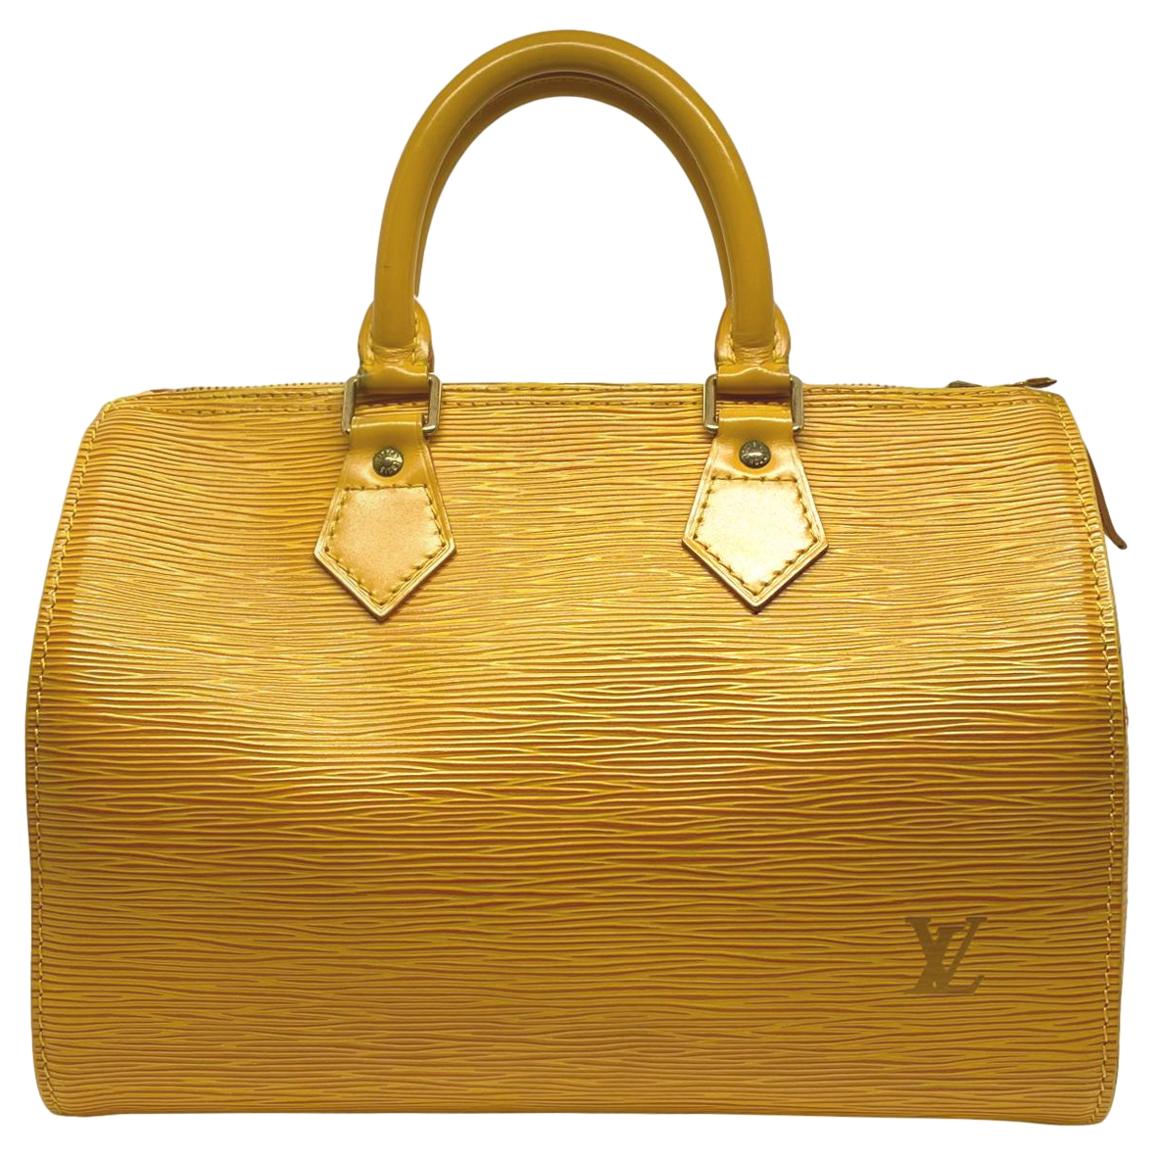 Louis Vuitton Speedy 25 Yellow EPI Leather Handbag, France 1995.